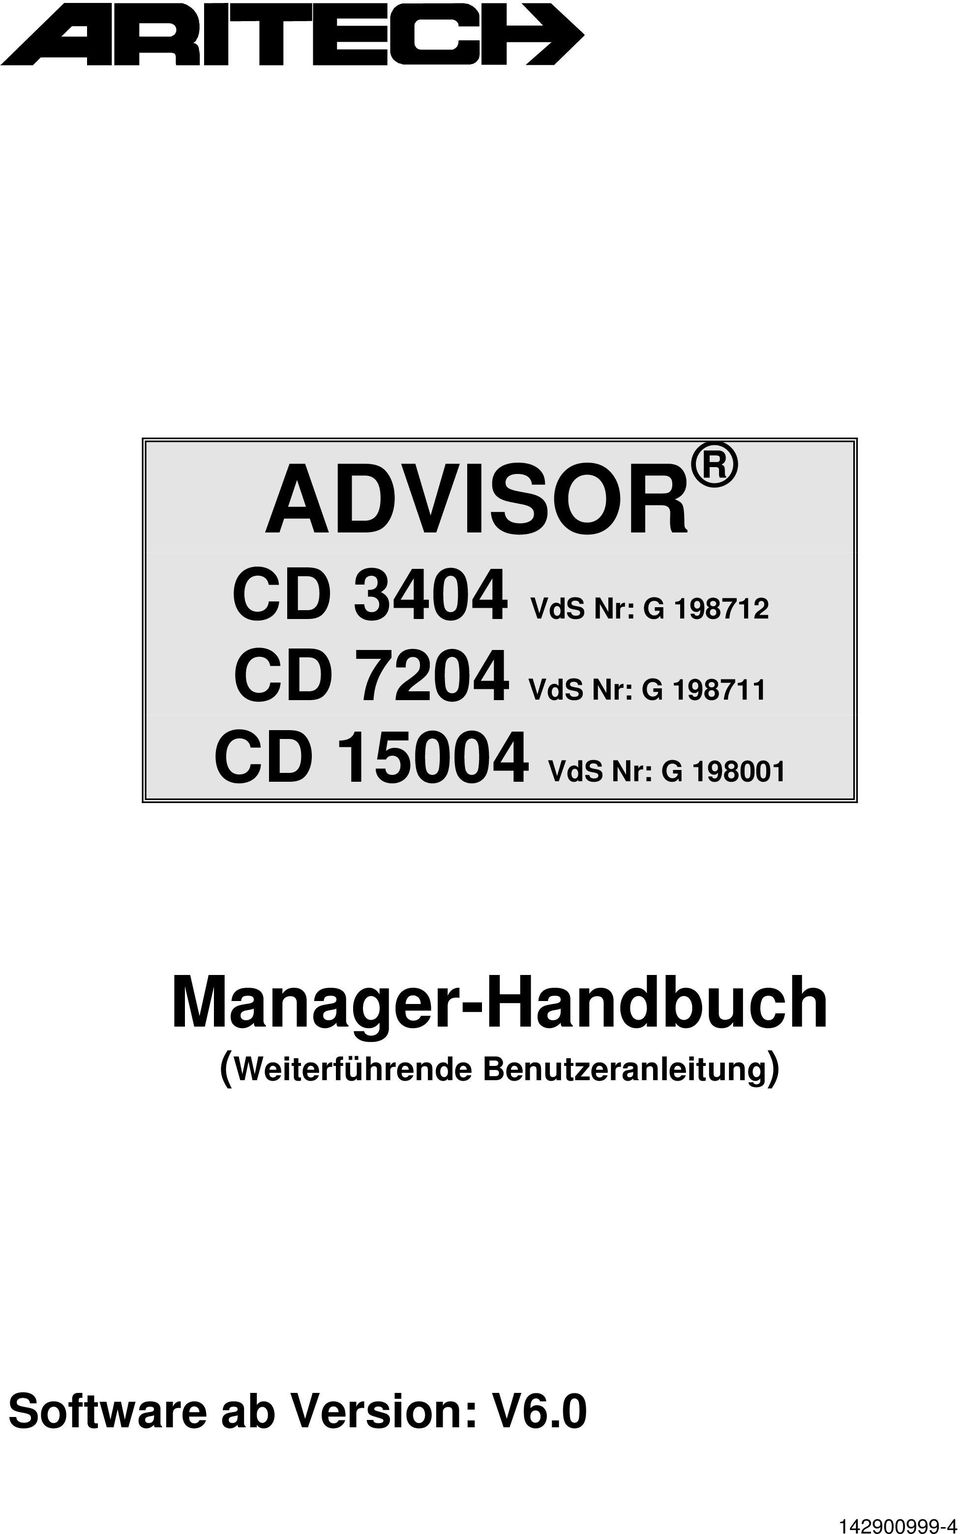 Manager-Handbuch (Weiterführende